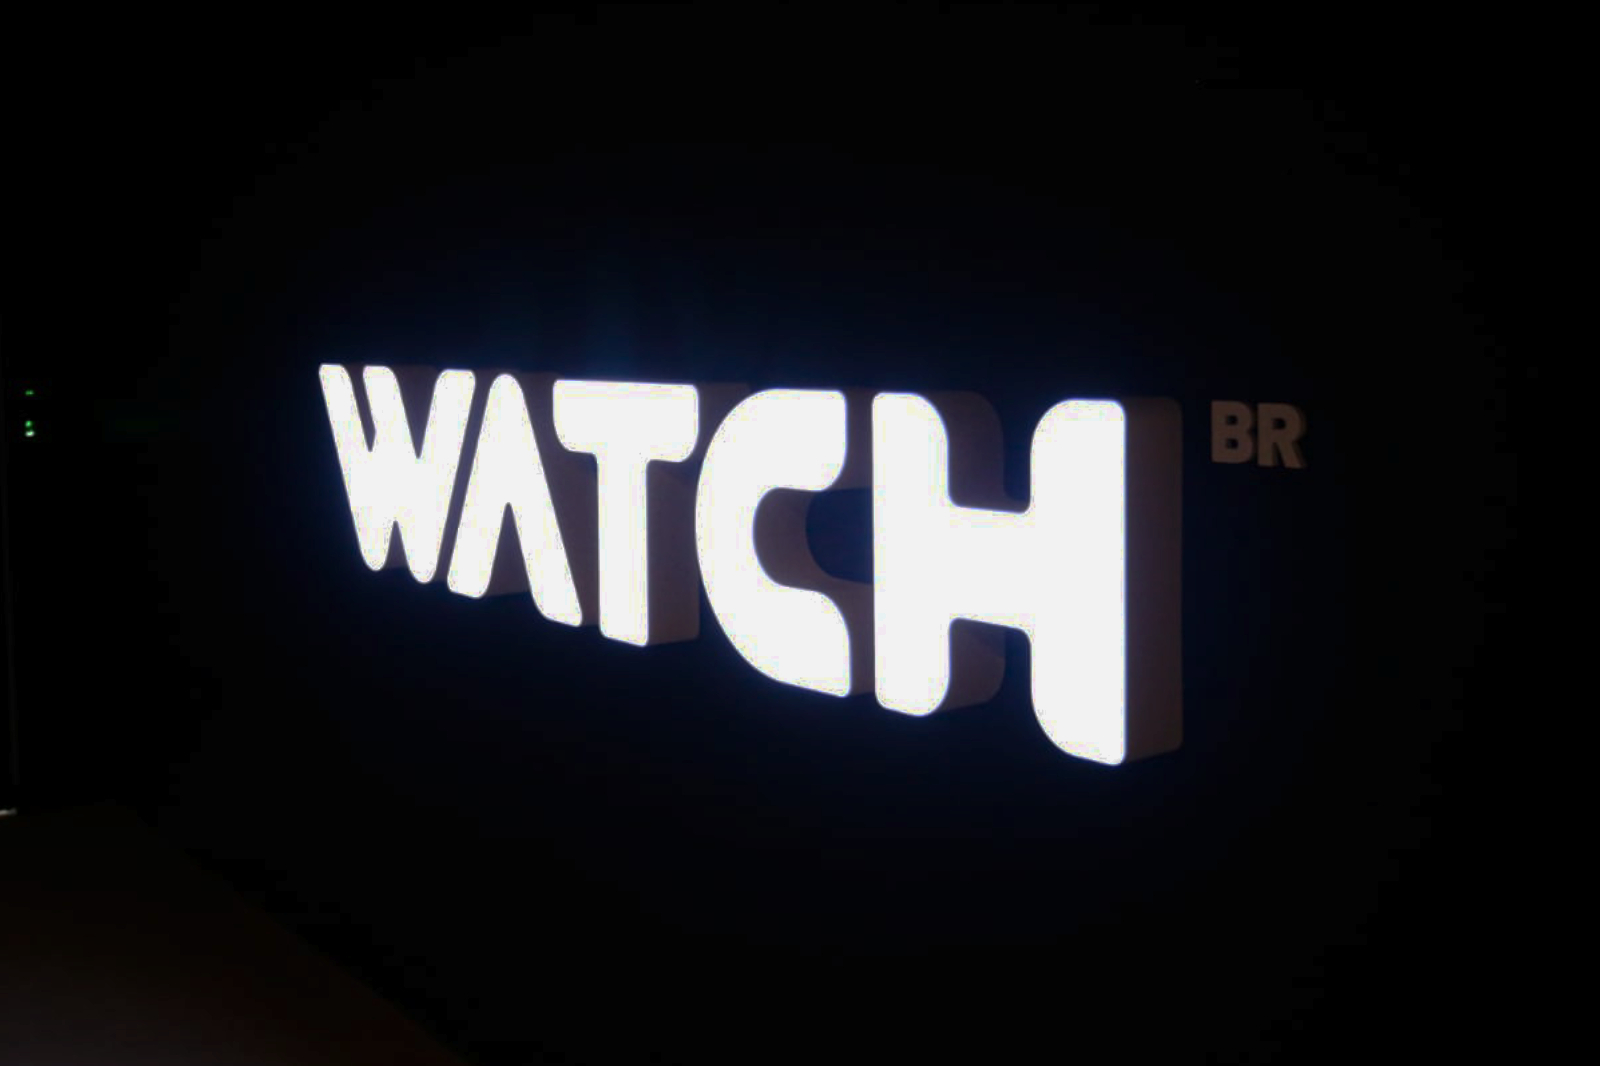 Conheça o hub de conteúdo Watch Brasil para provedores de internet